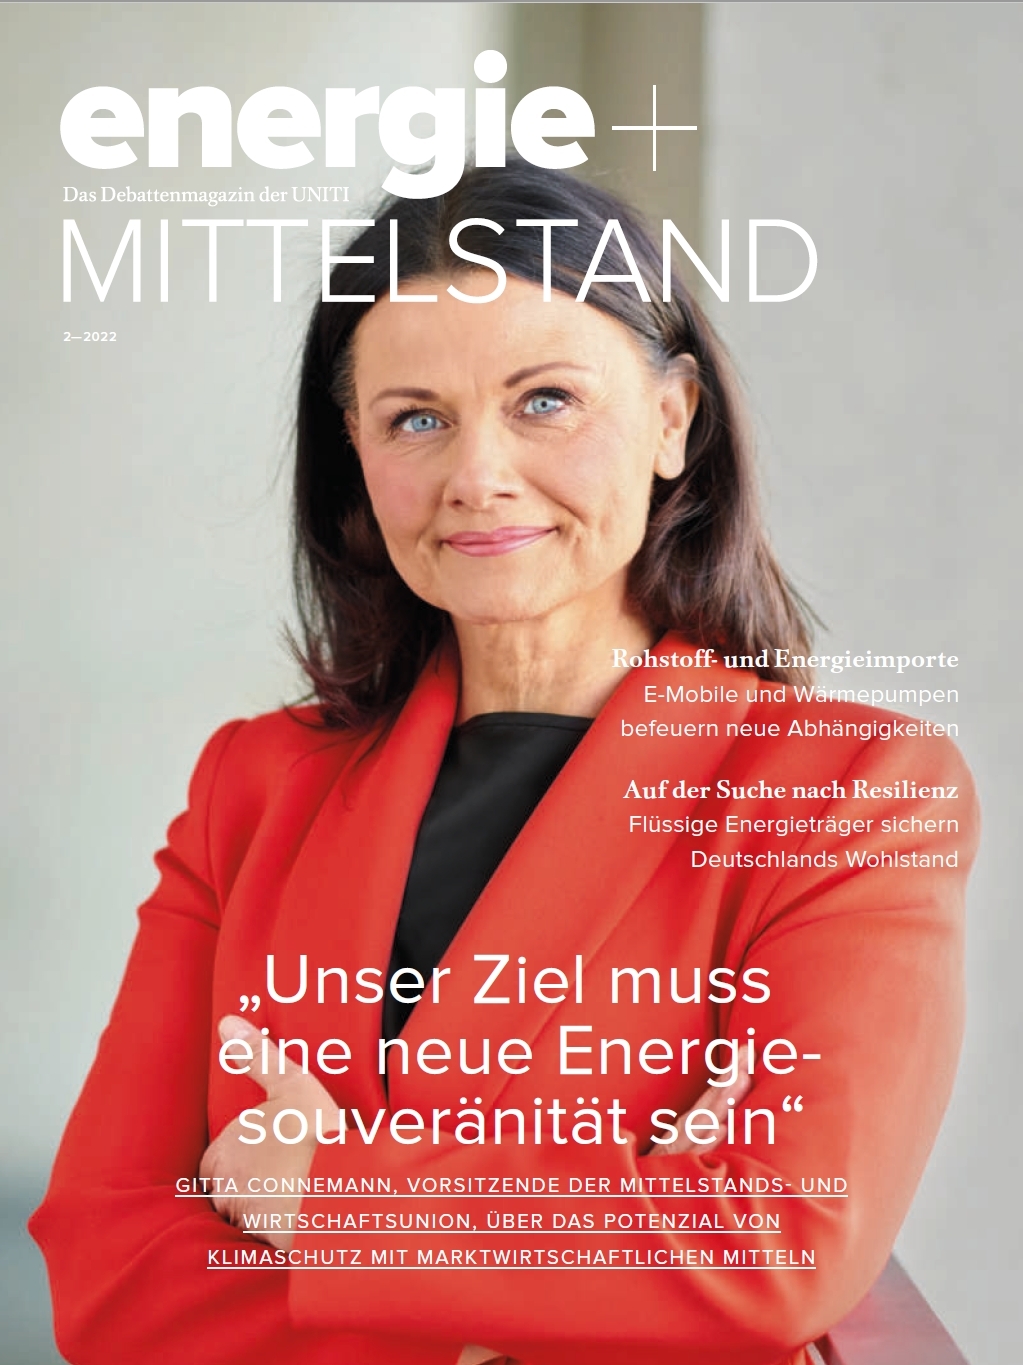 UNITI-Magazin „energie+MITTELSTAND“ – Ausgabe 02-2022